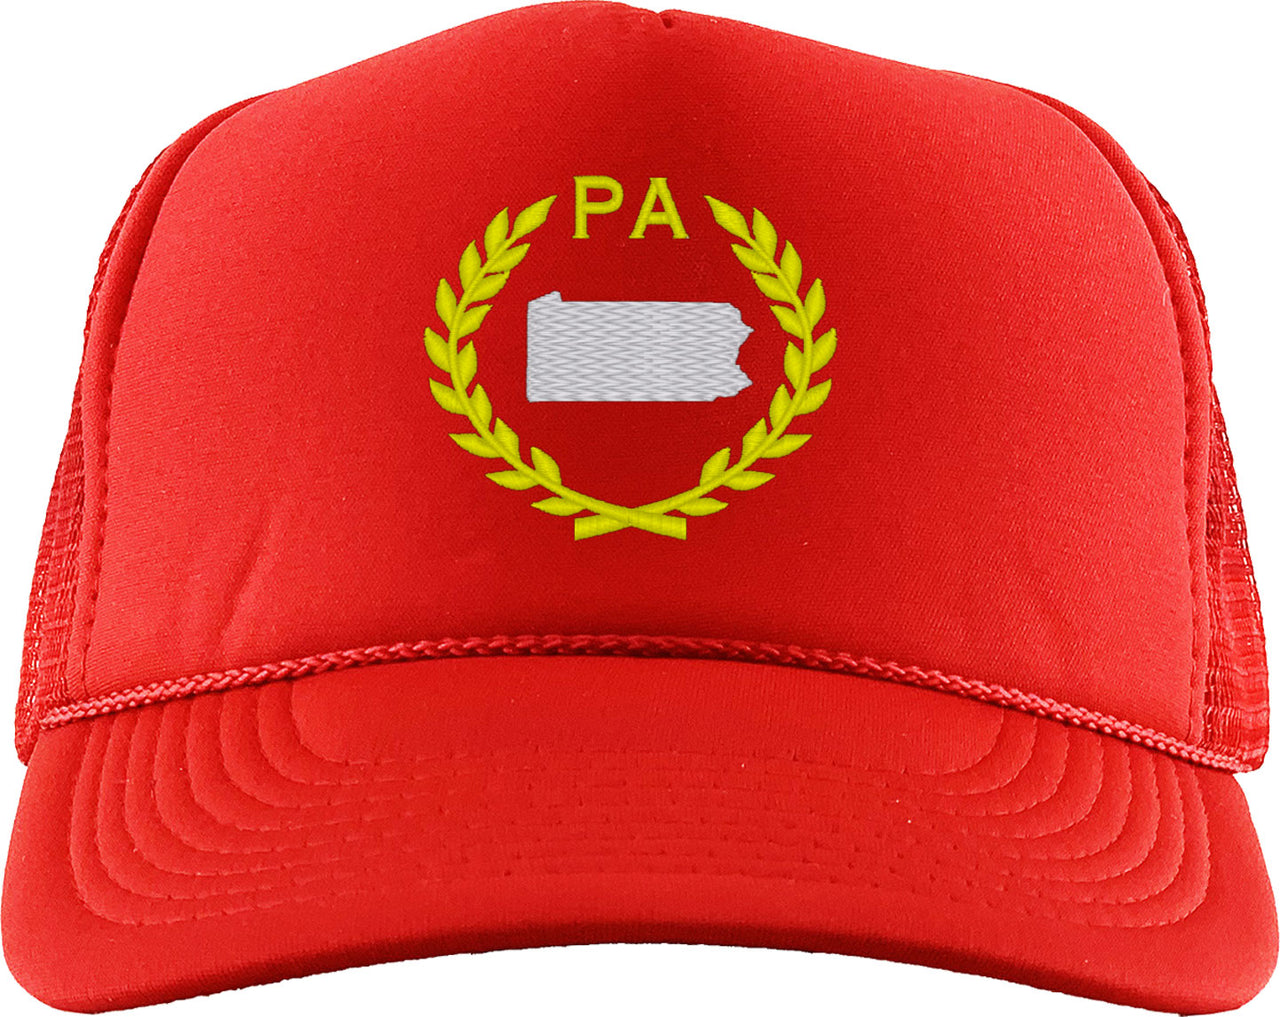 Pennsylvania State Foam Trucker Hat